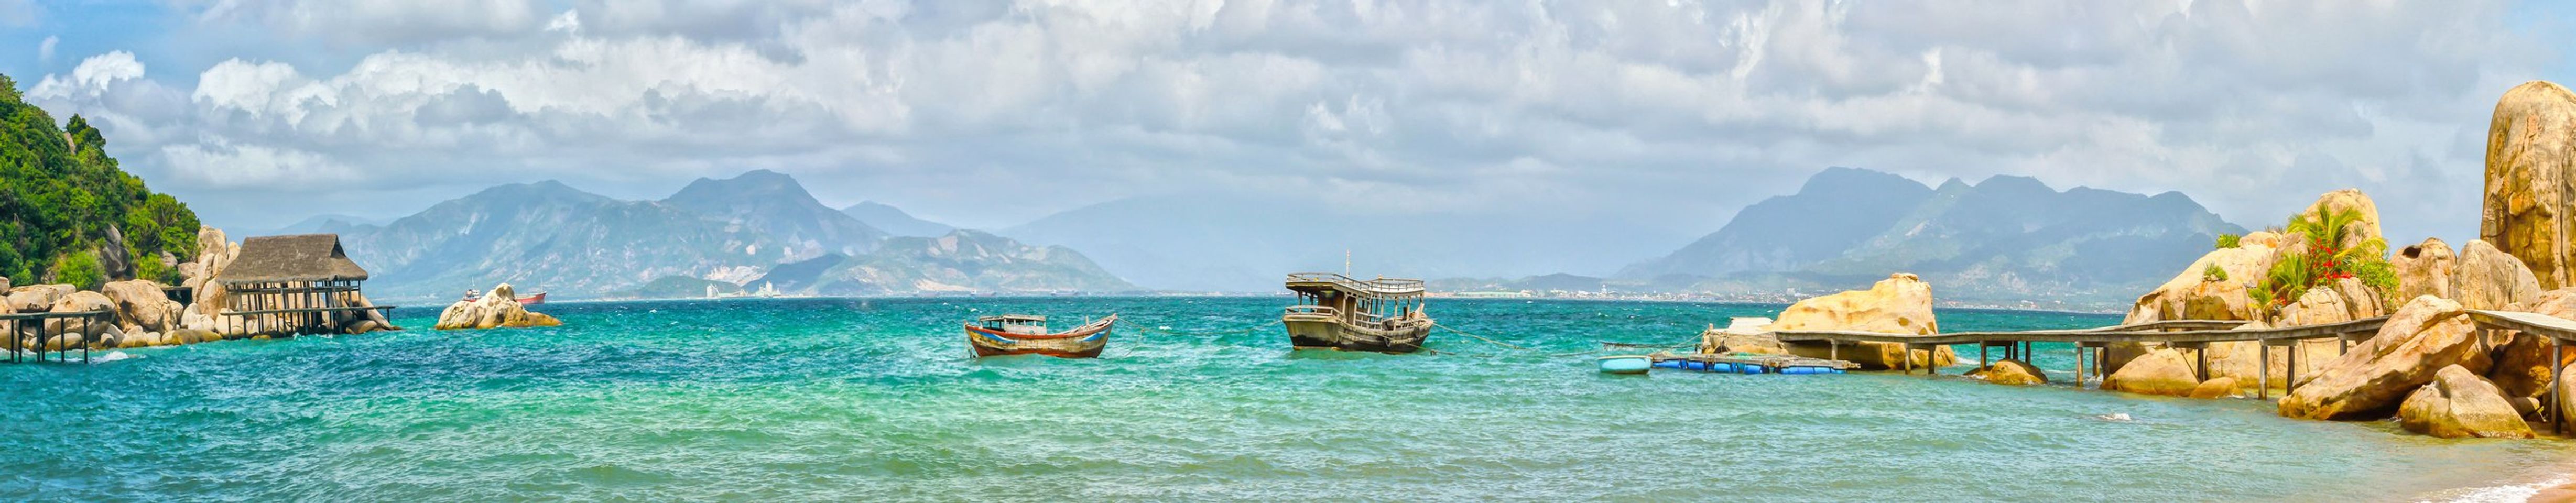 Nha Trang: Vietnams Best Coastal Escape